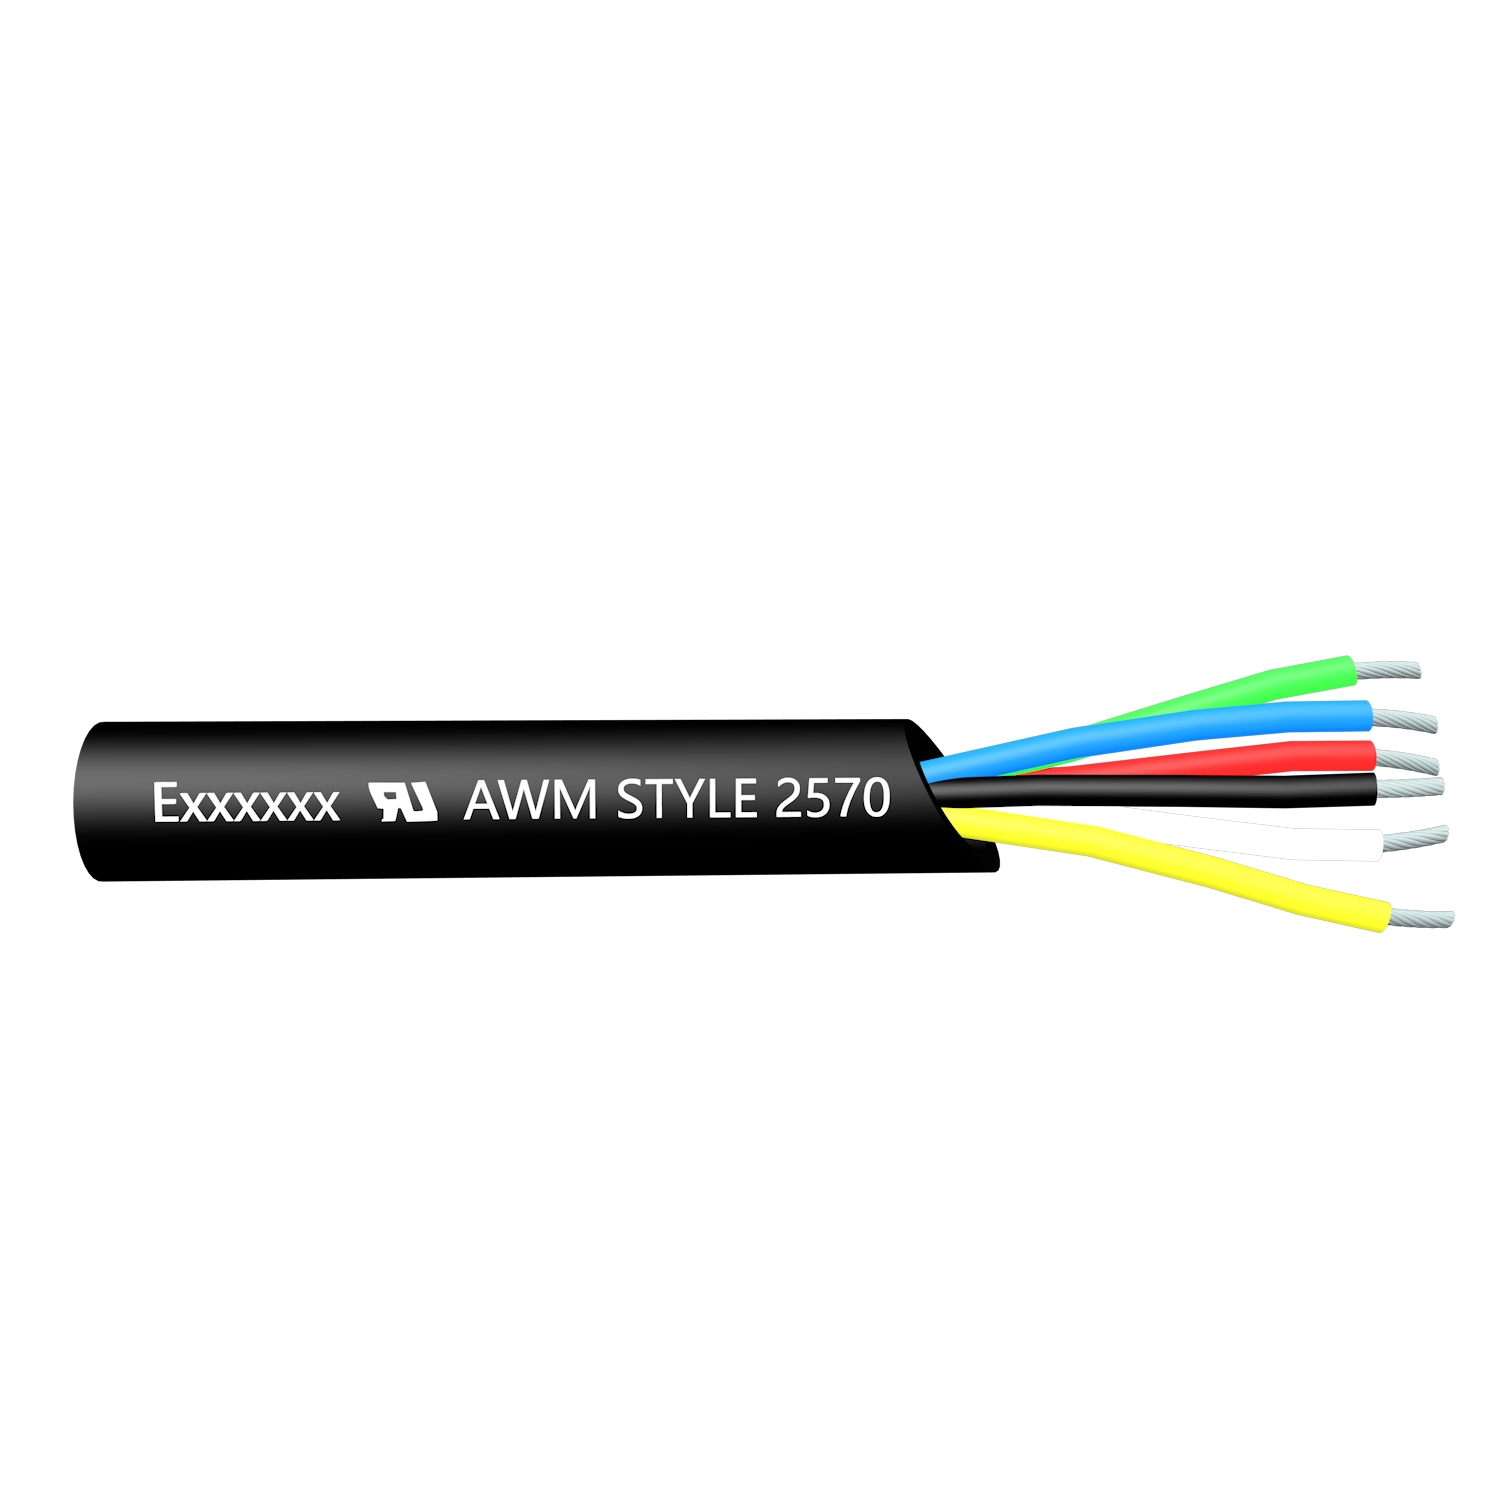 Cable de transmisión de cable de PVC multinúcleo apantallado UL2570 de alto voltaje